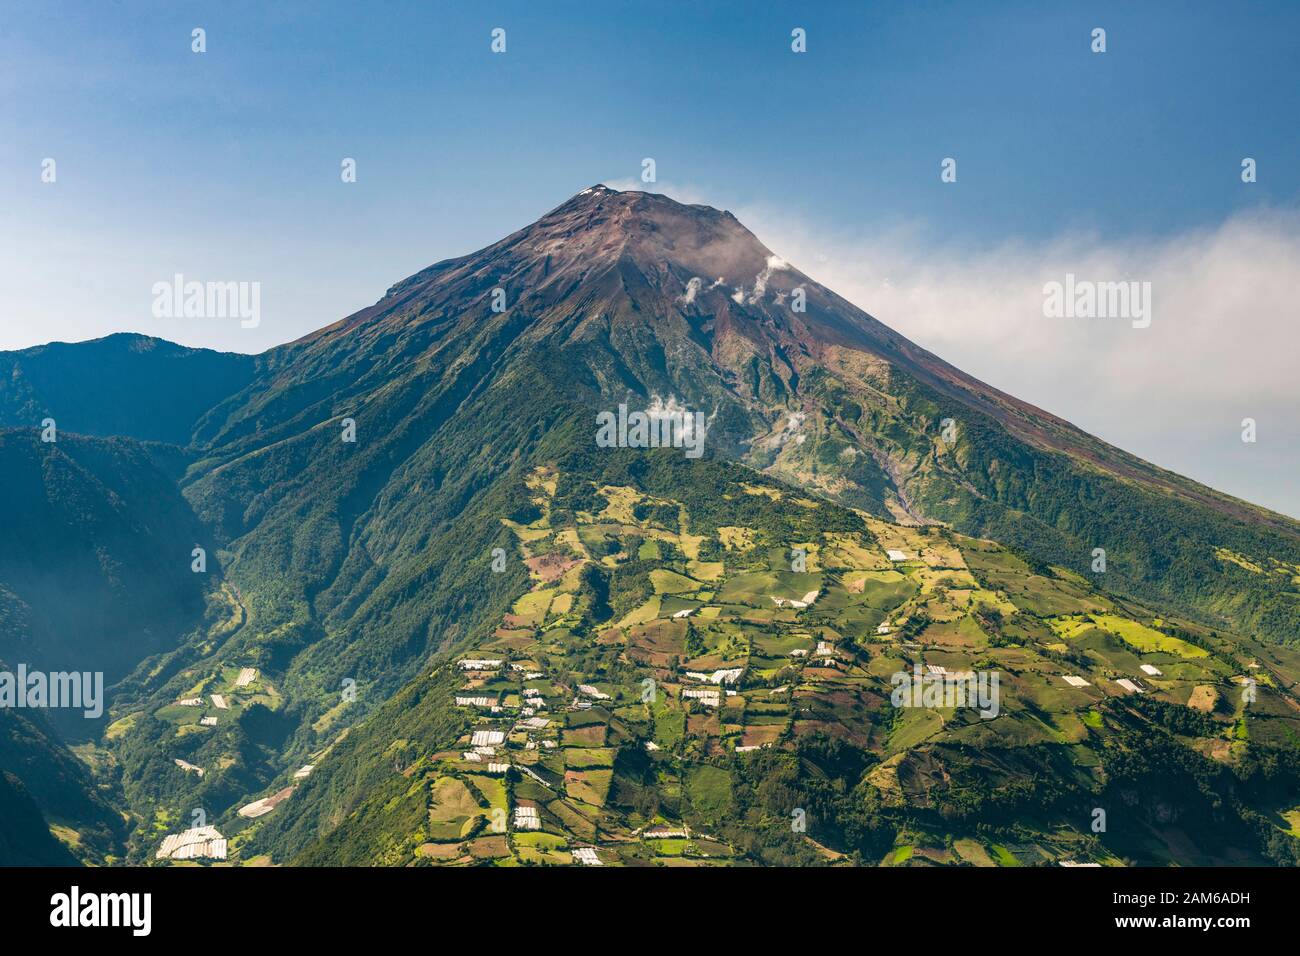 Tungurahua volcano (5023m) near the town of Baños in Ecuador. Stock Photo